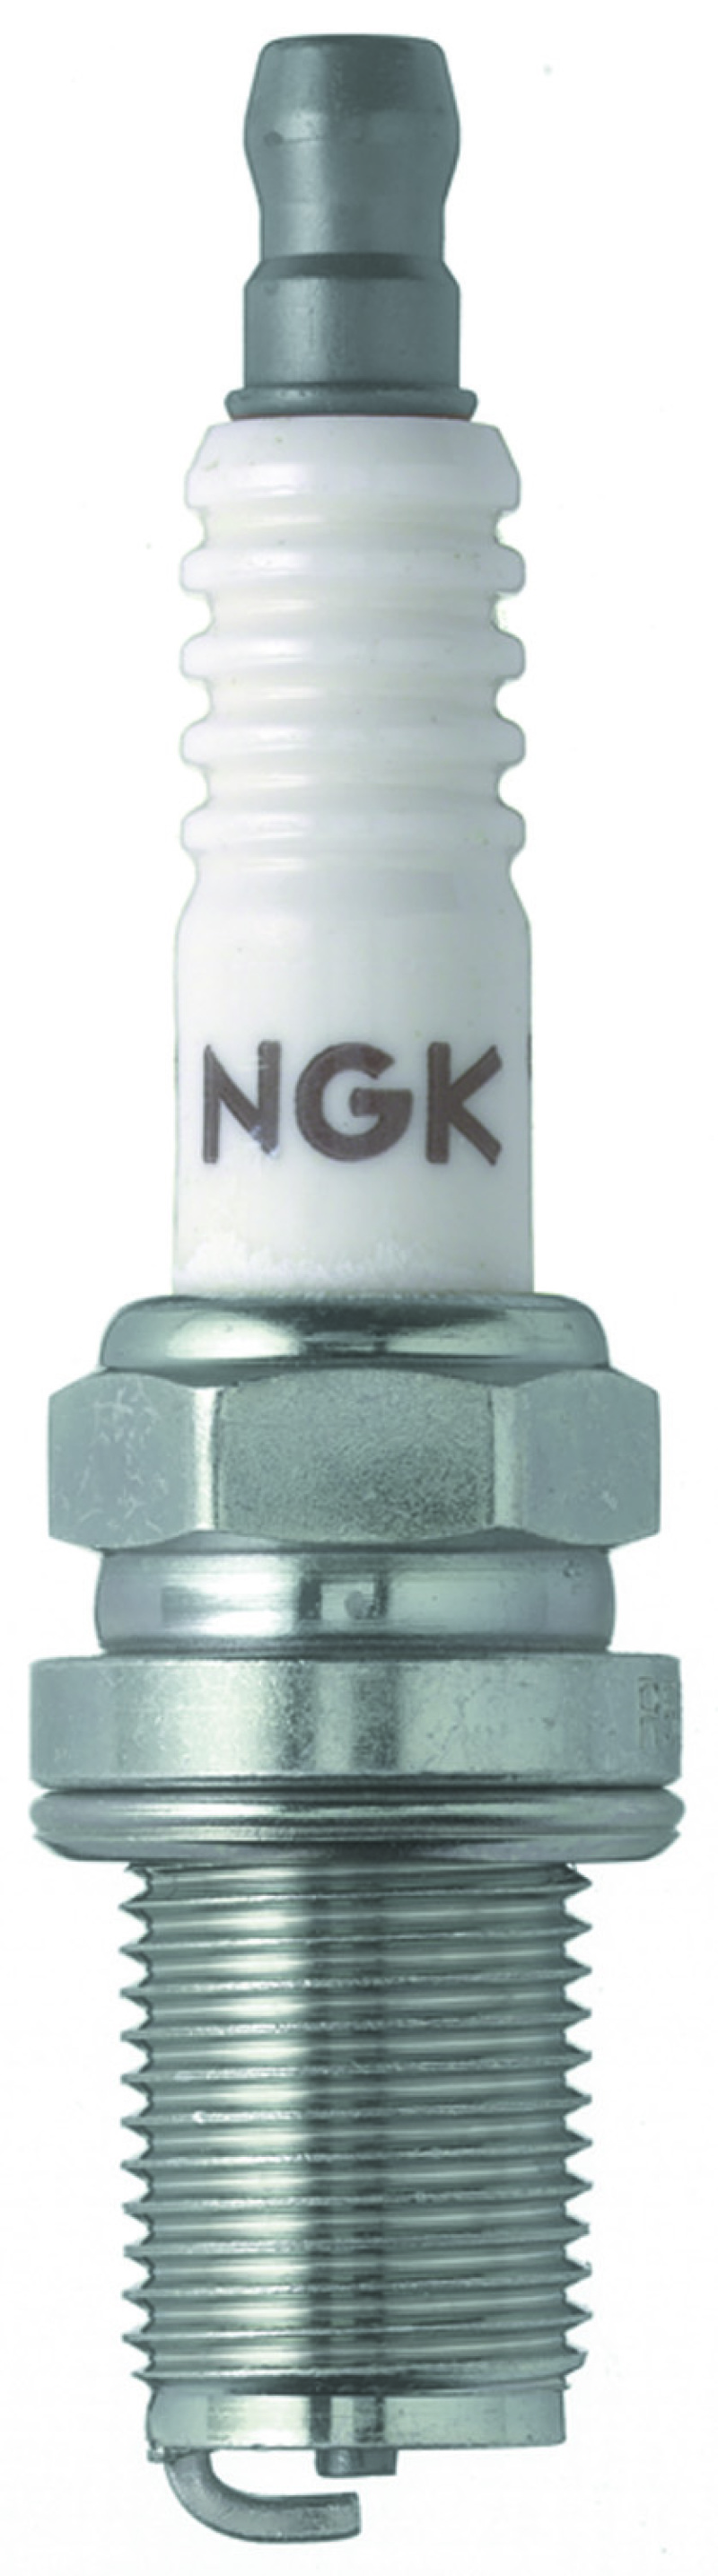 NGK Racing Spark Plug Box of 4 (R5671A-9) - 5238